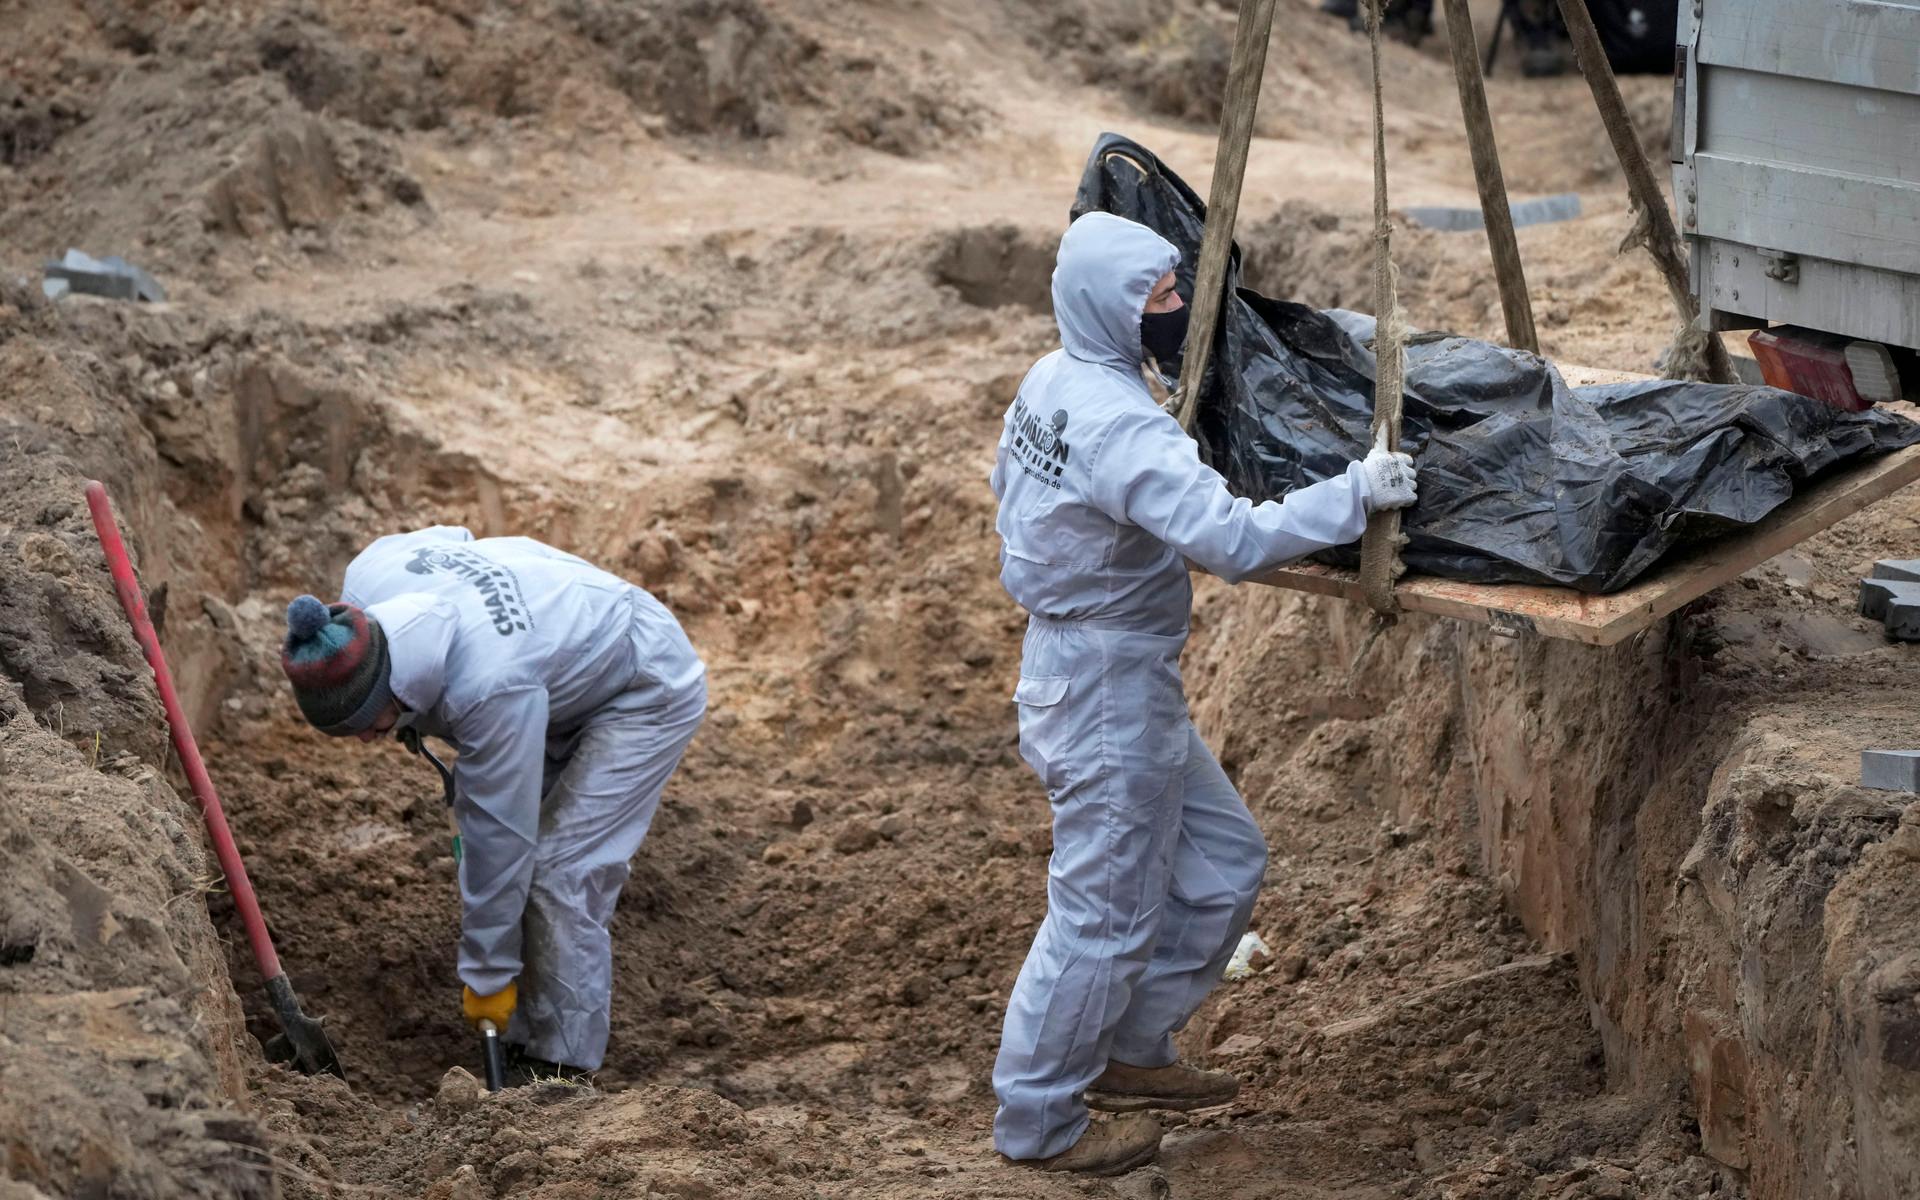 Ryssland anklagas för krigsbrott efter att massgravar hittats i staden Butja. Flera civila hittades döda med bakbundna händer och misstänks ha avrättats av ryska soldater. 